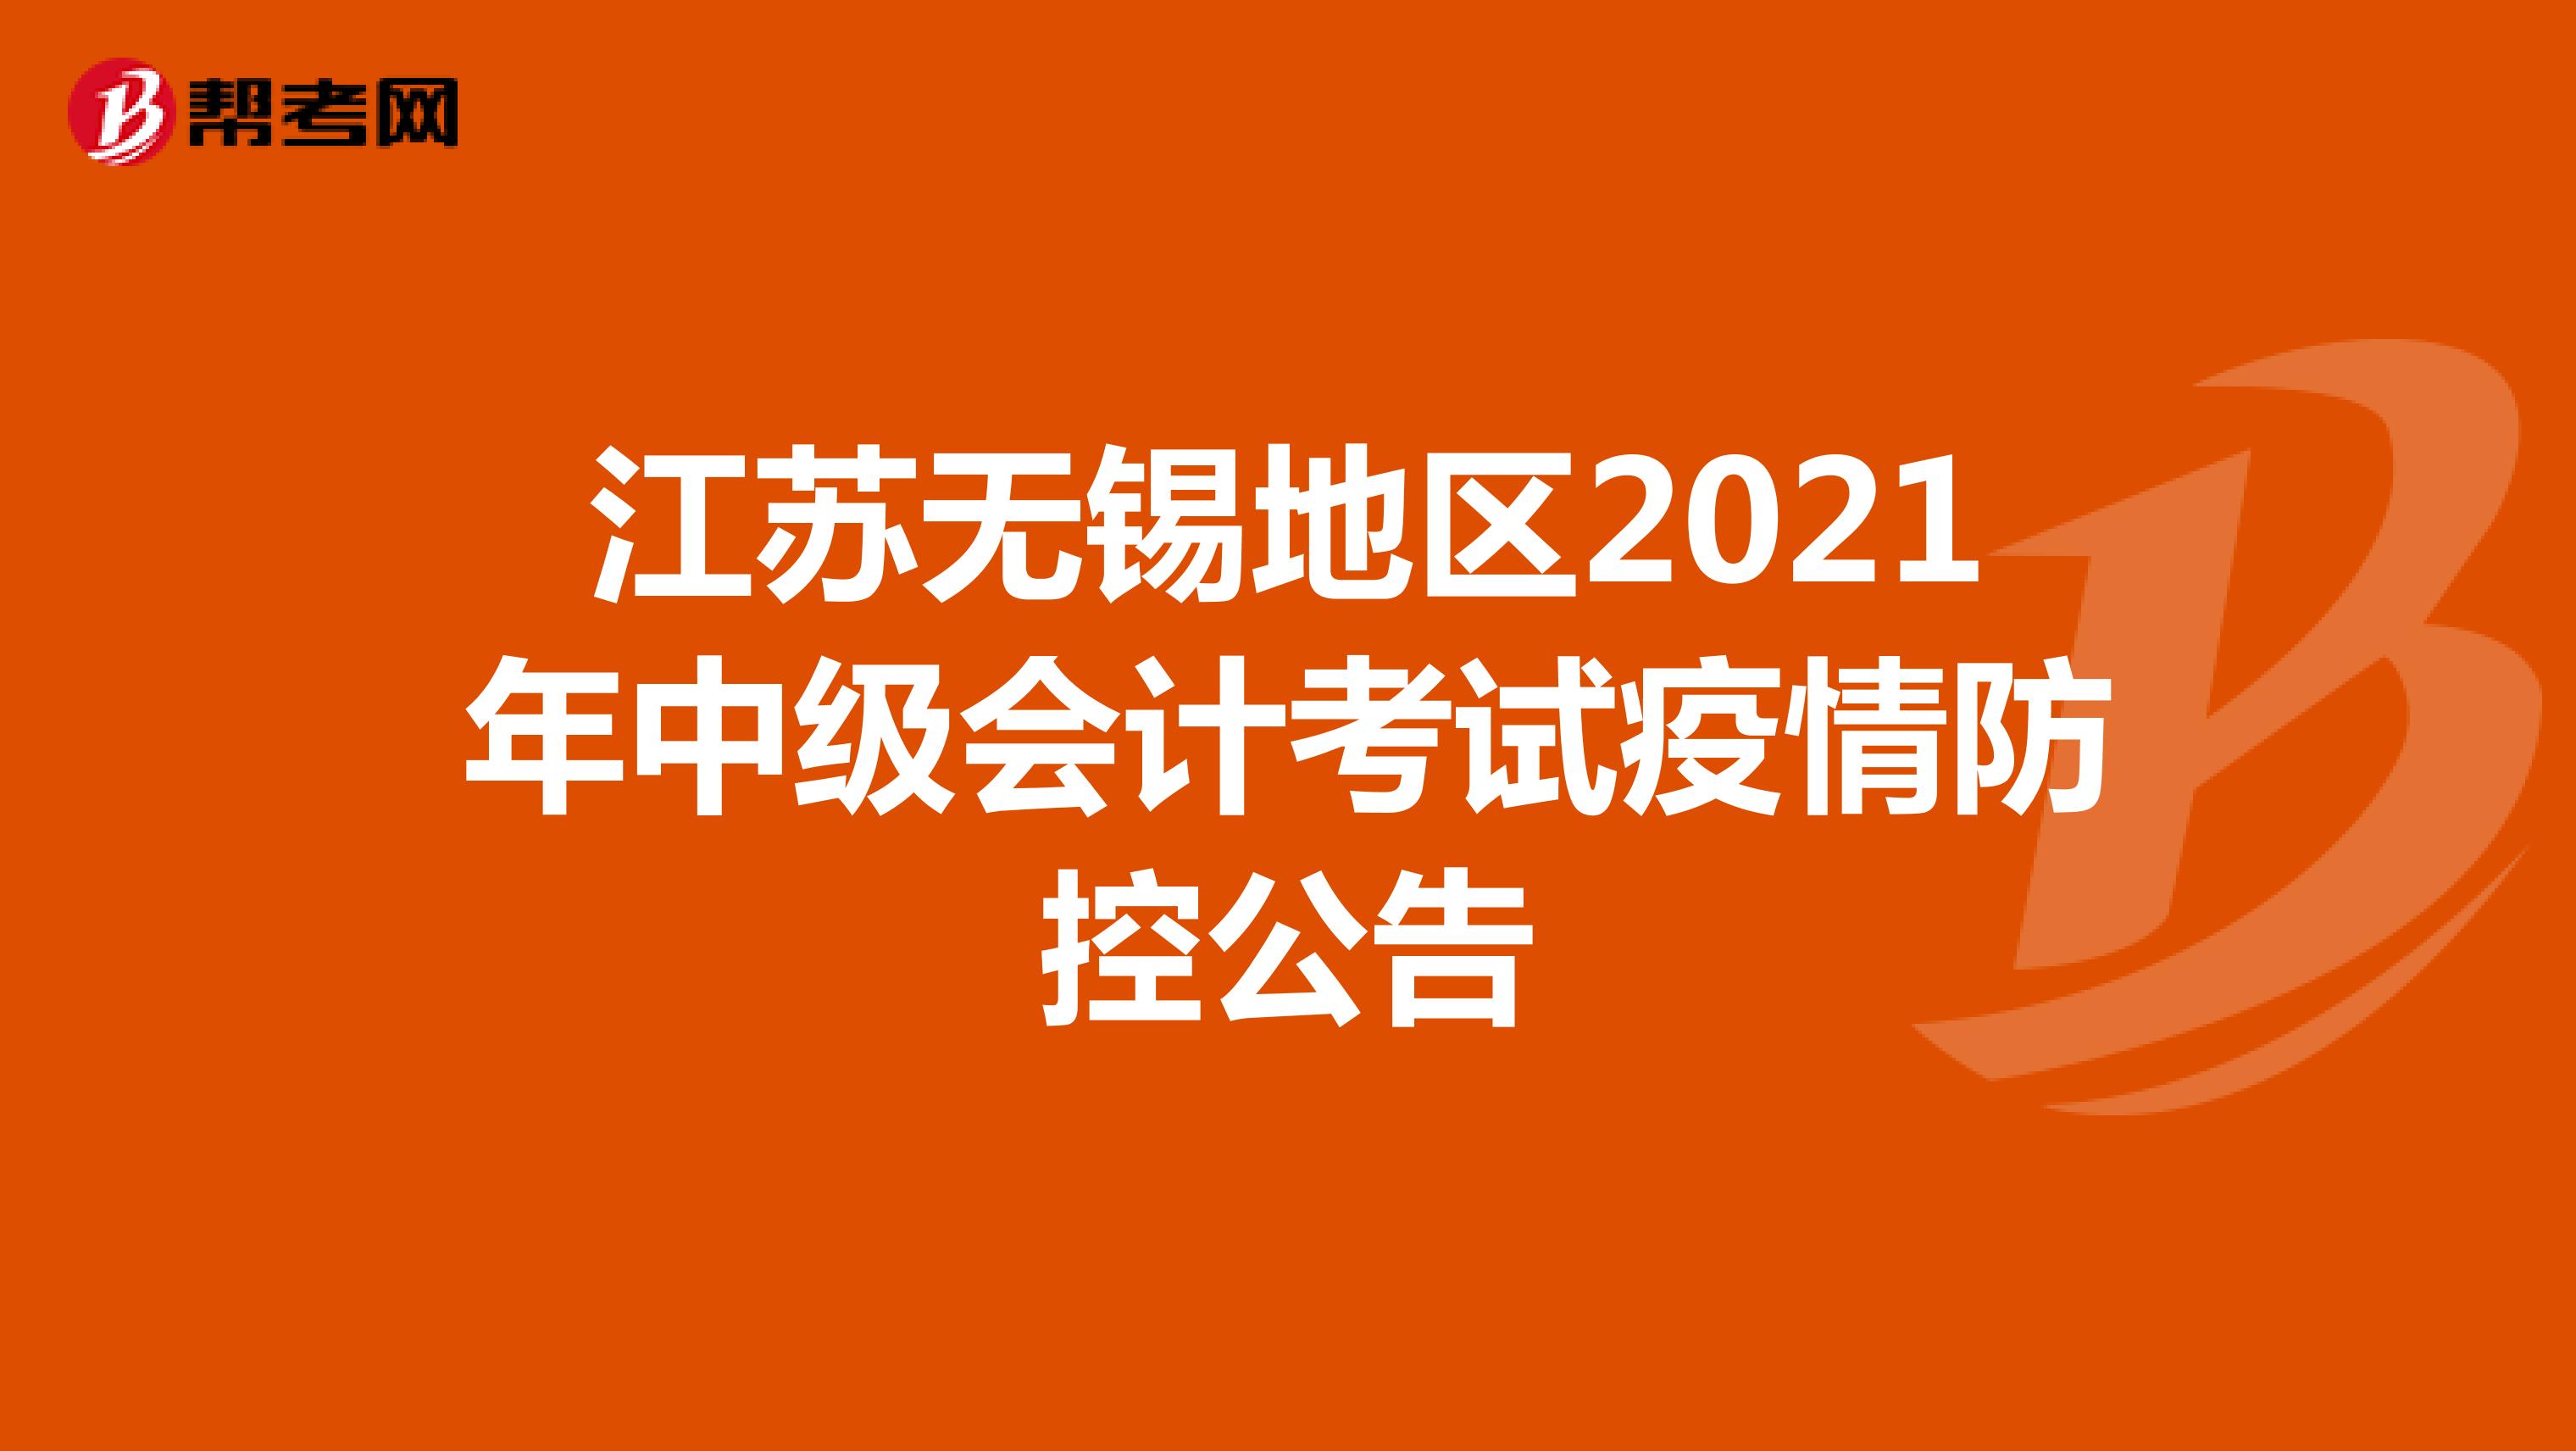 江苏无锡地区2021年中级会计考试疫情防控公告